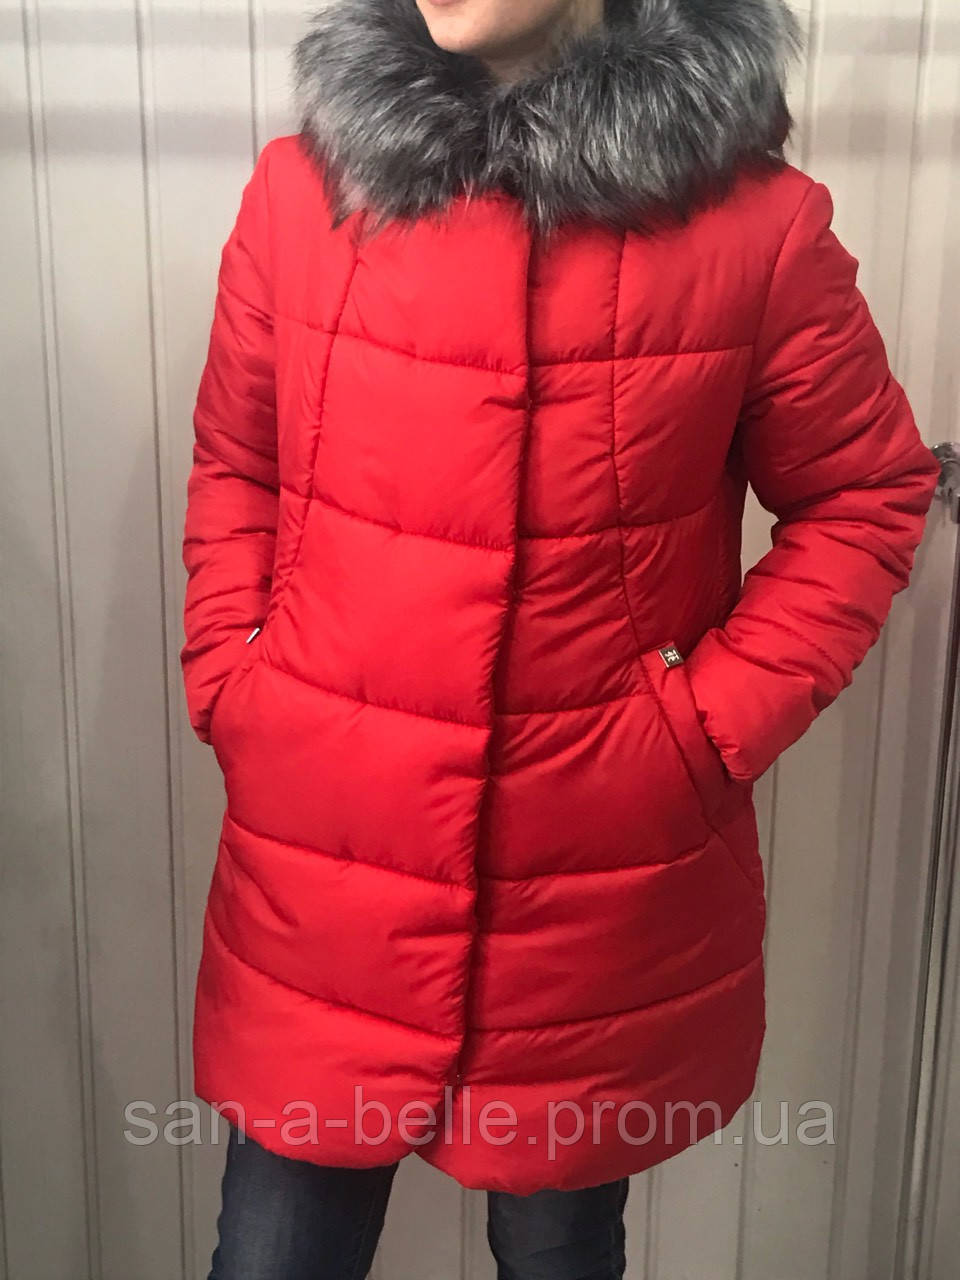 Куртка жіноча зимова, модель номер 7